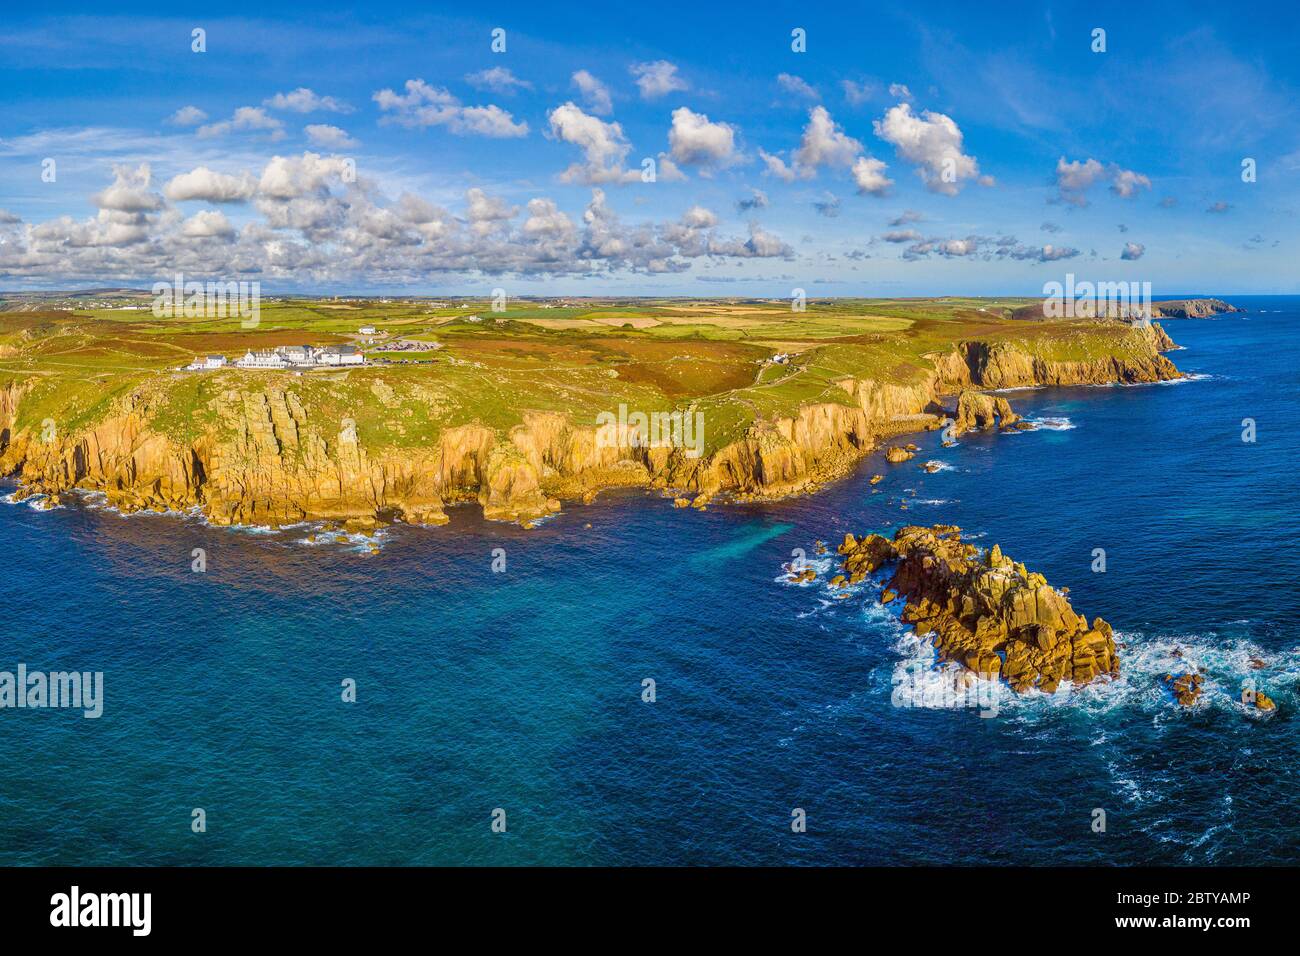 Vue aérienne de la fin de la Terre, péninsule de Penwith, point le plus à l'ouest du continent anglais, Cornouailles, Angleterre, Royaume-Uni, Europe Banque D'Images